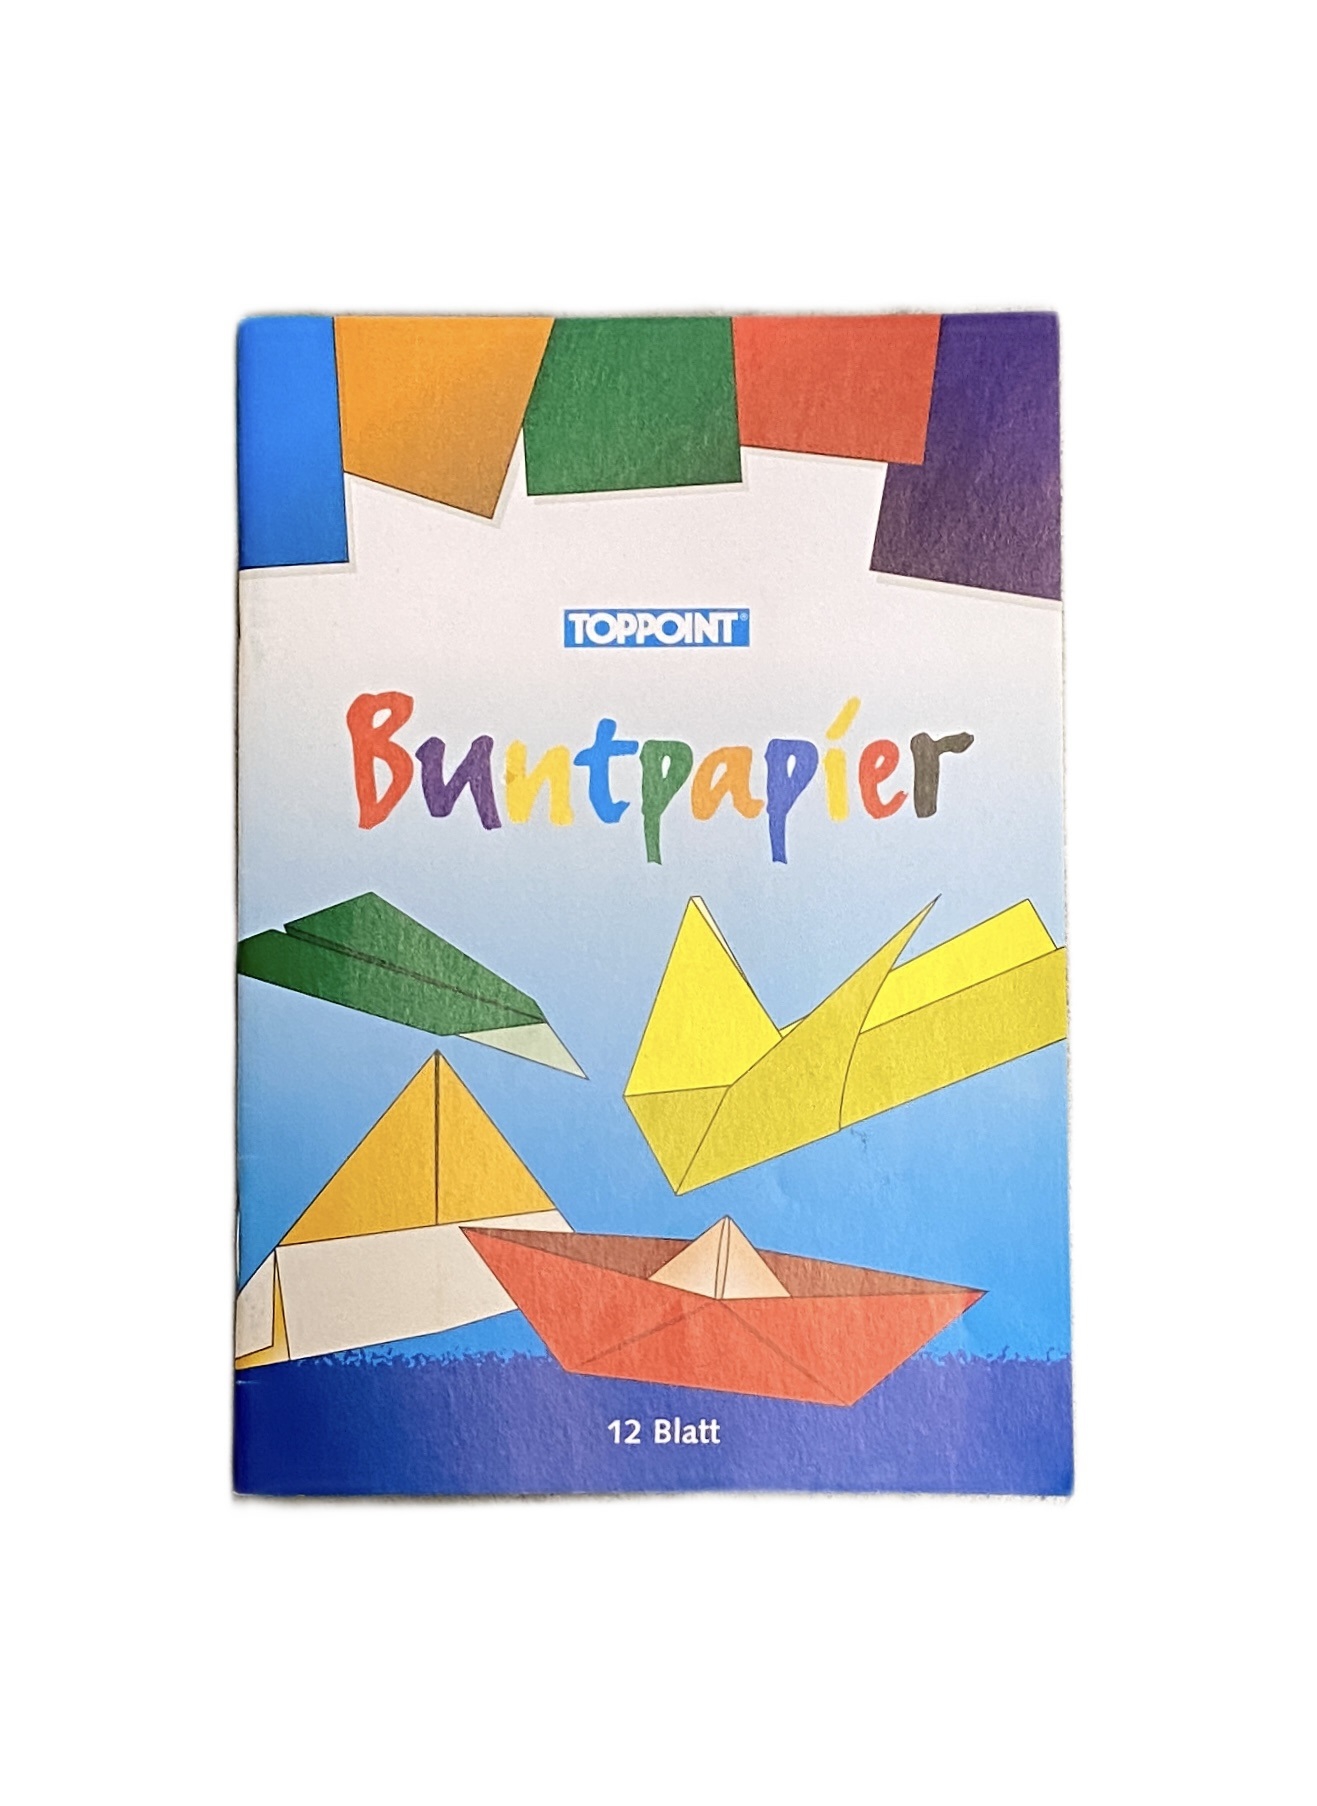 Buntpapierheft, DIN A4,12 Blatt in 6 Farben